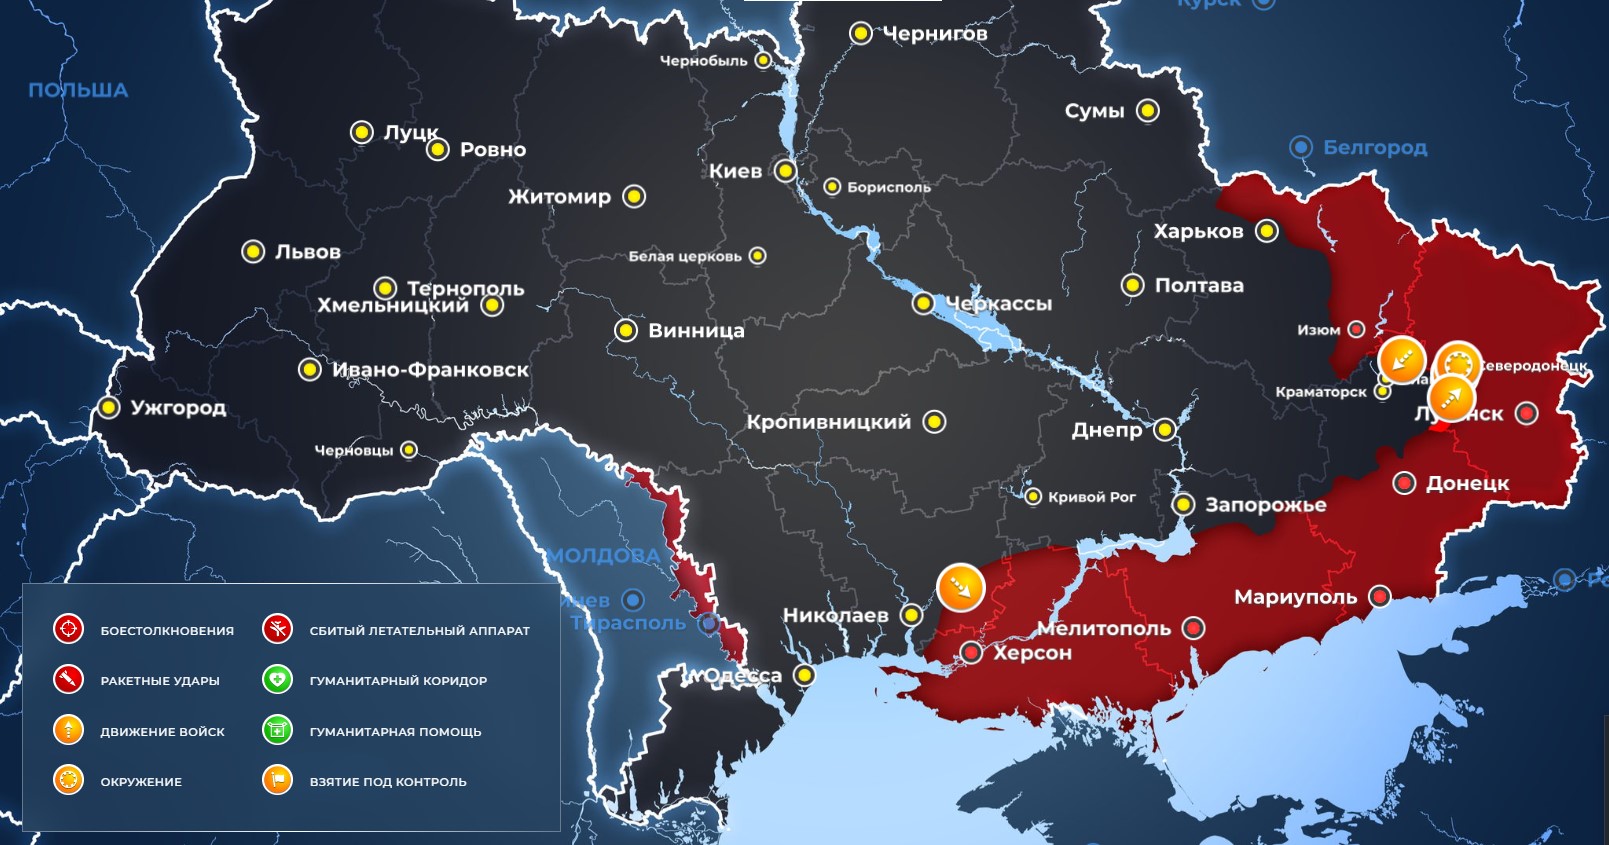 В район Павлодара уничтожены два батальона польских наемников: последние новости военной спецоперации РФ на Украине на сегодня, 31 мая